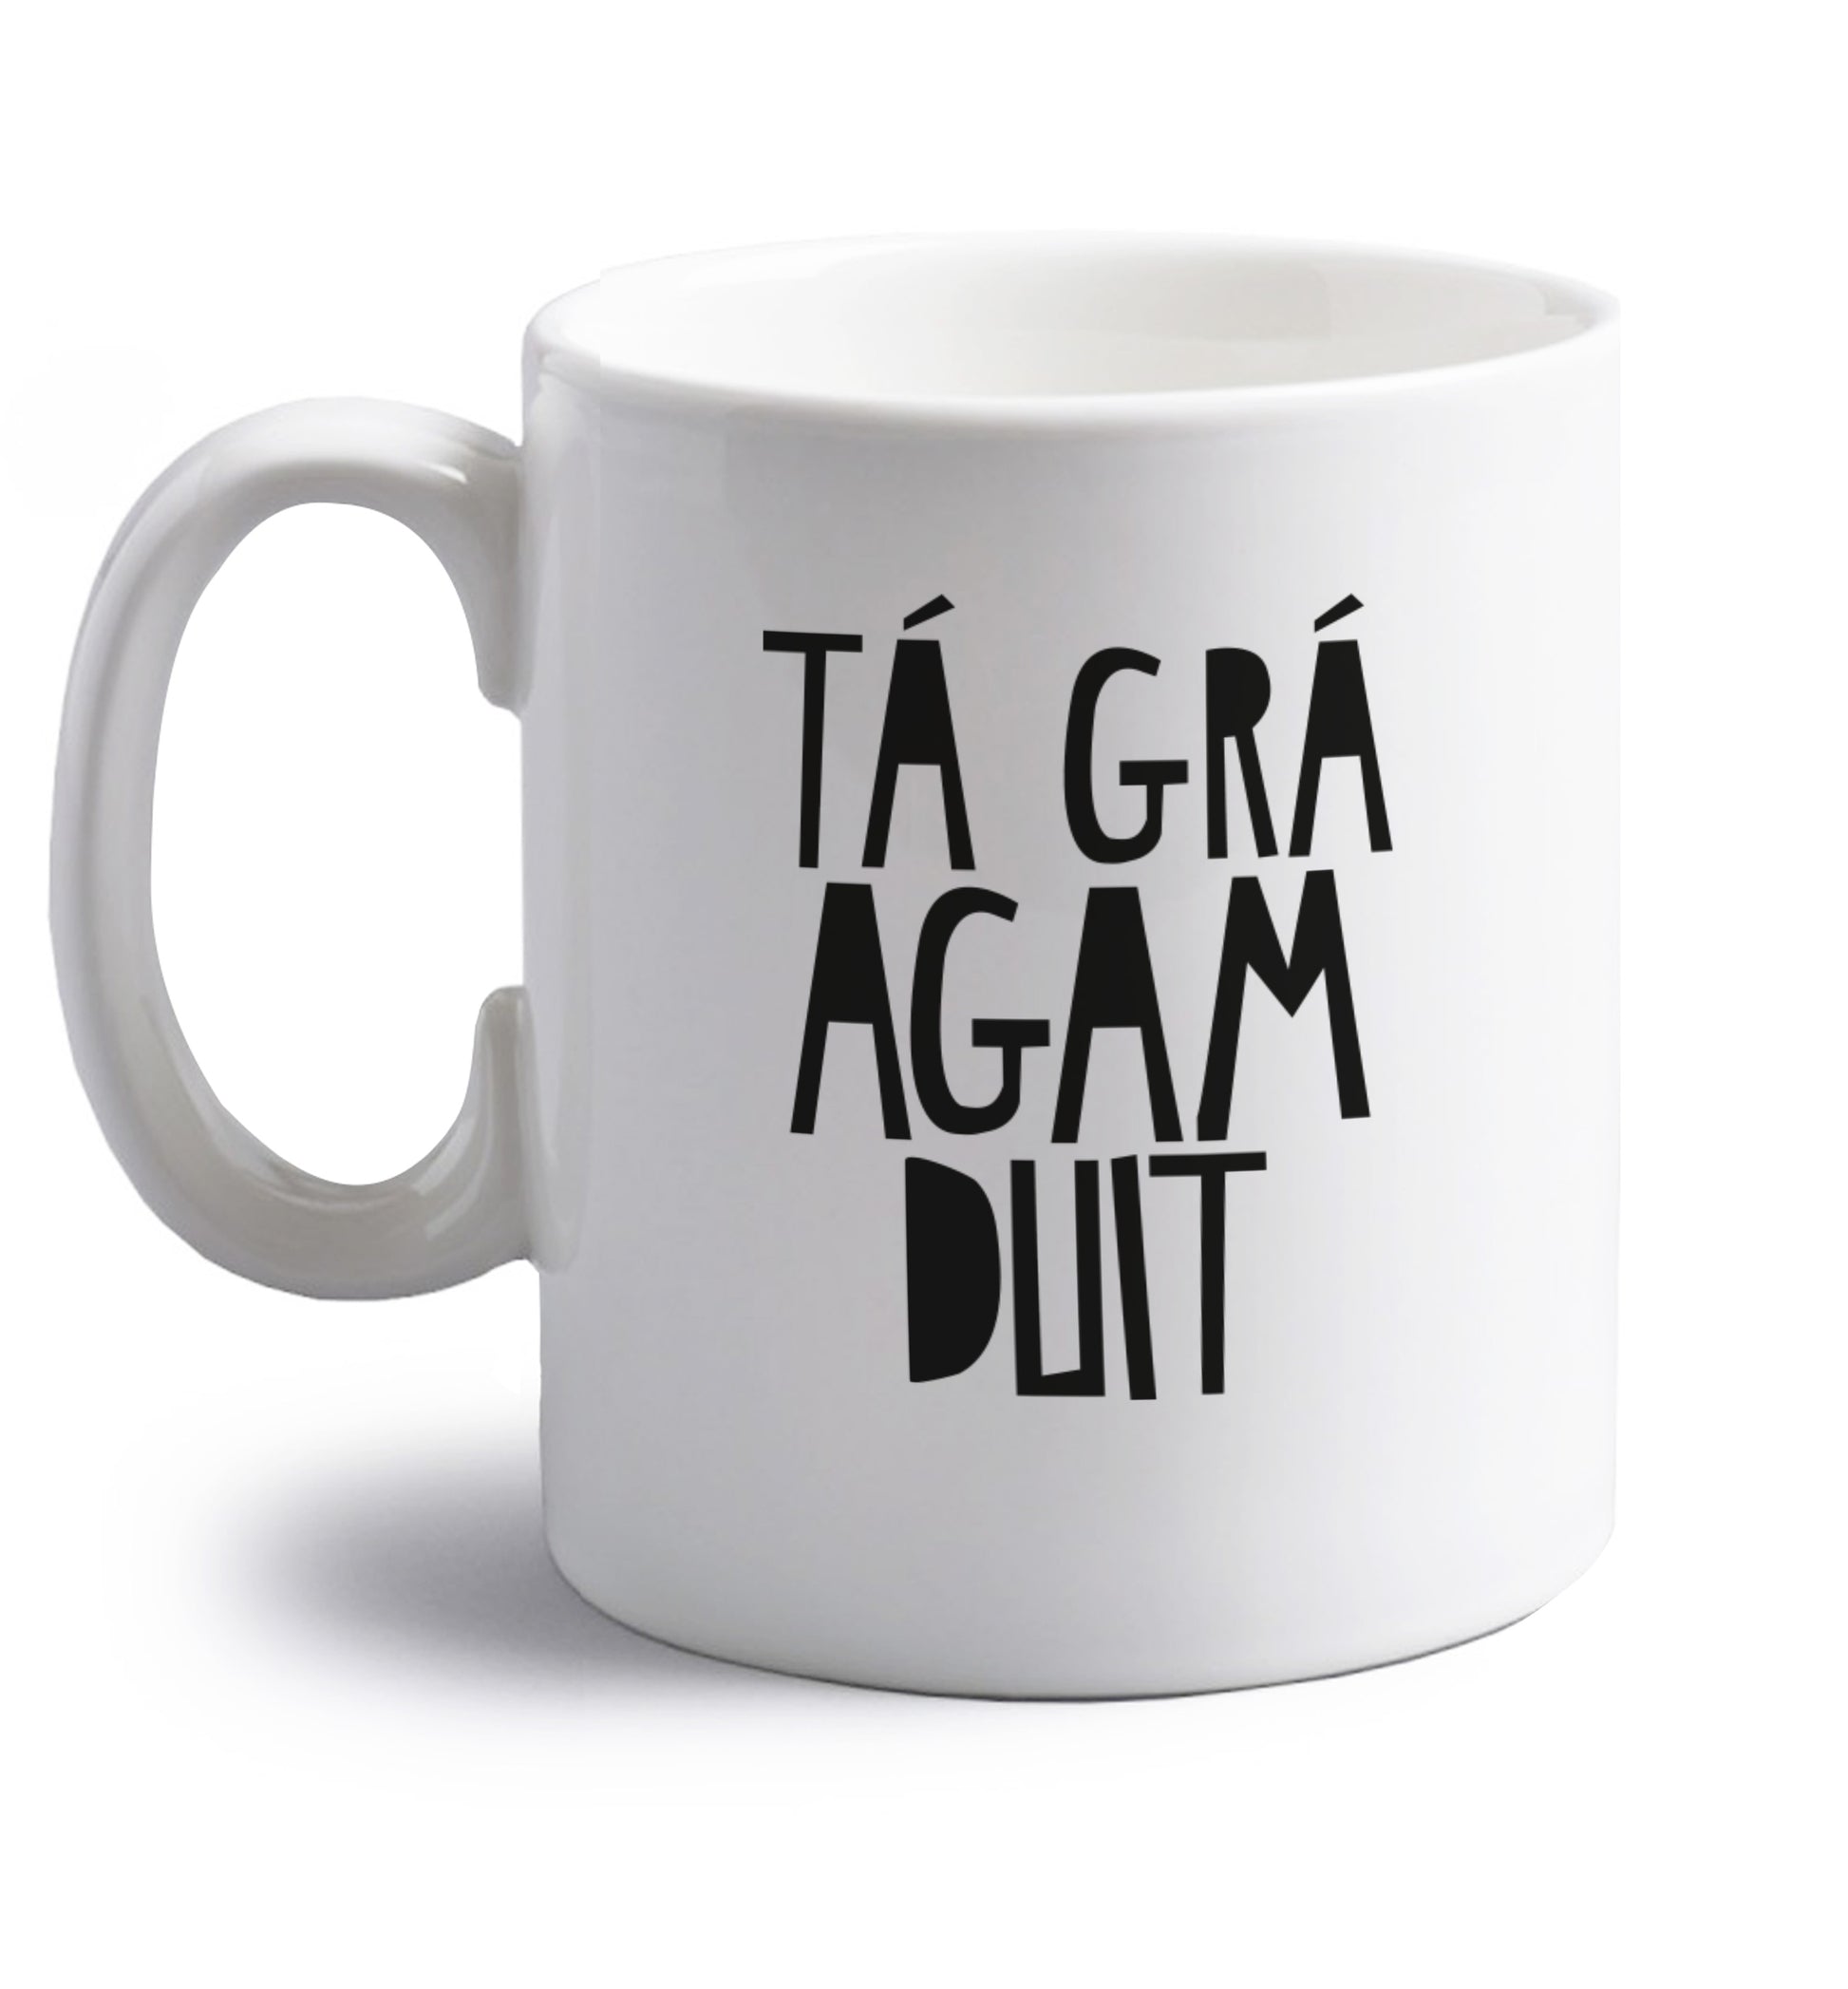 T‡ gr‡ agam duit - I love you right handed white ceramic mug 